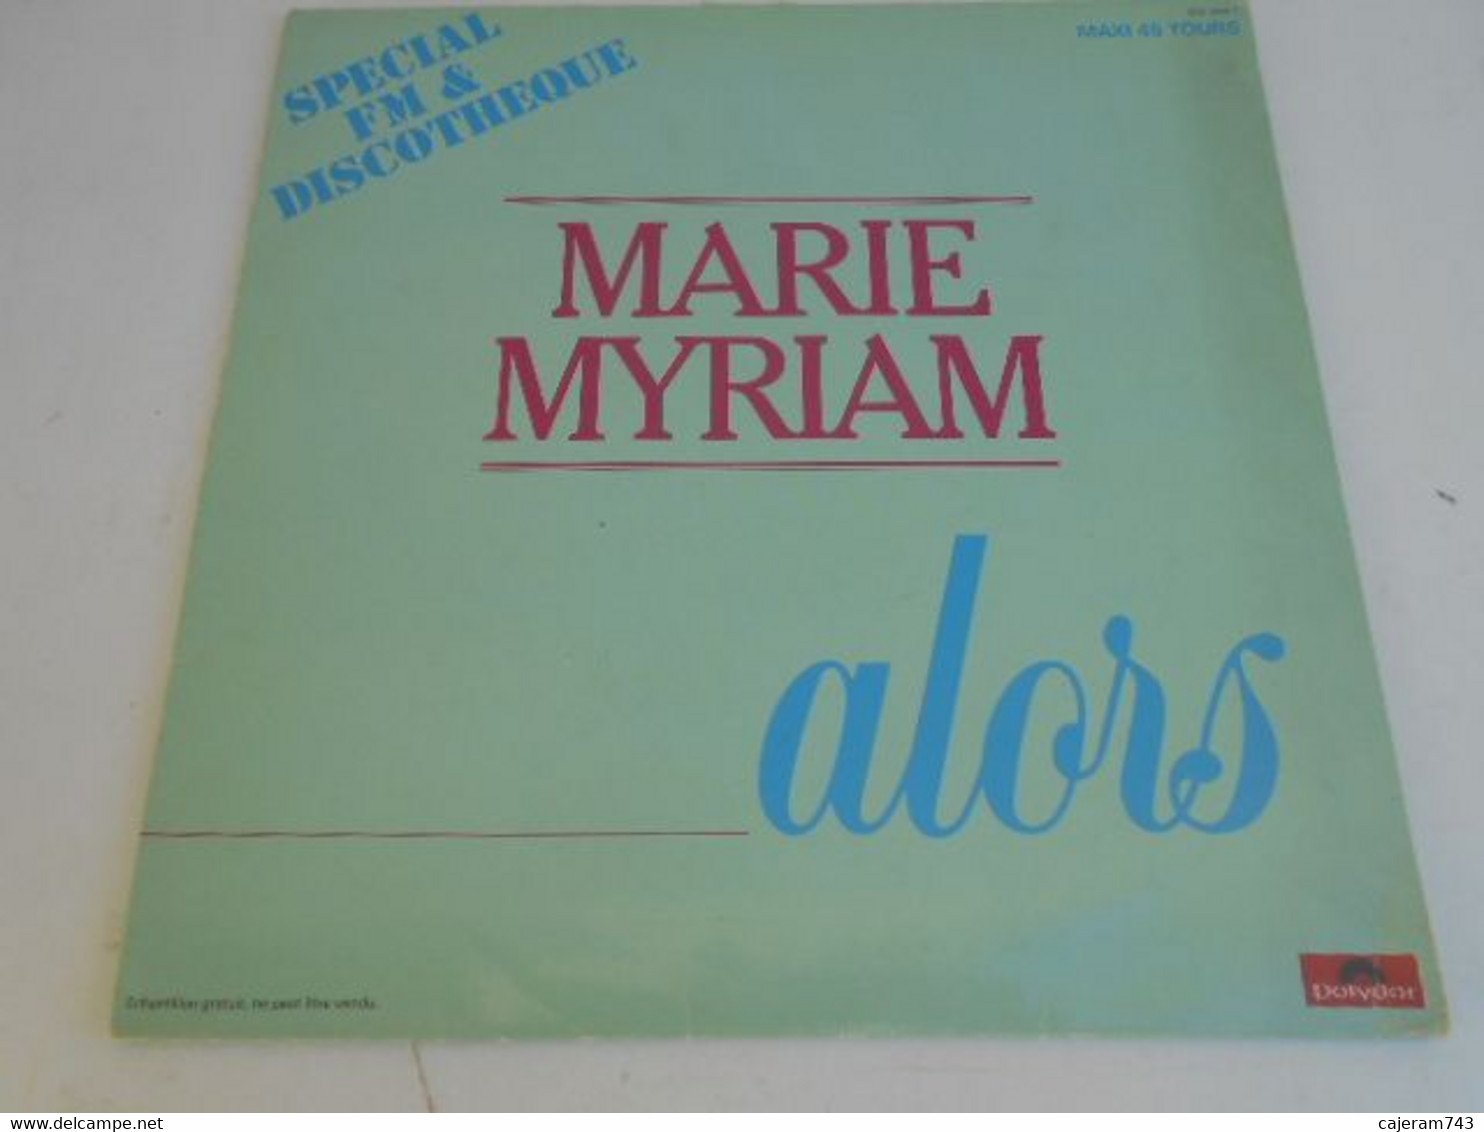 MAXI 45T Format 33T. MARIE MYRIAM (ex EUROVISION) Alors - La Plus Belle Chanson D'amour. SPECIAL FM & DISCOTHEQUE - RARE - 45 T - Maxi-Single